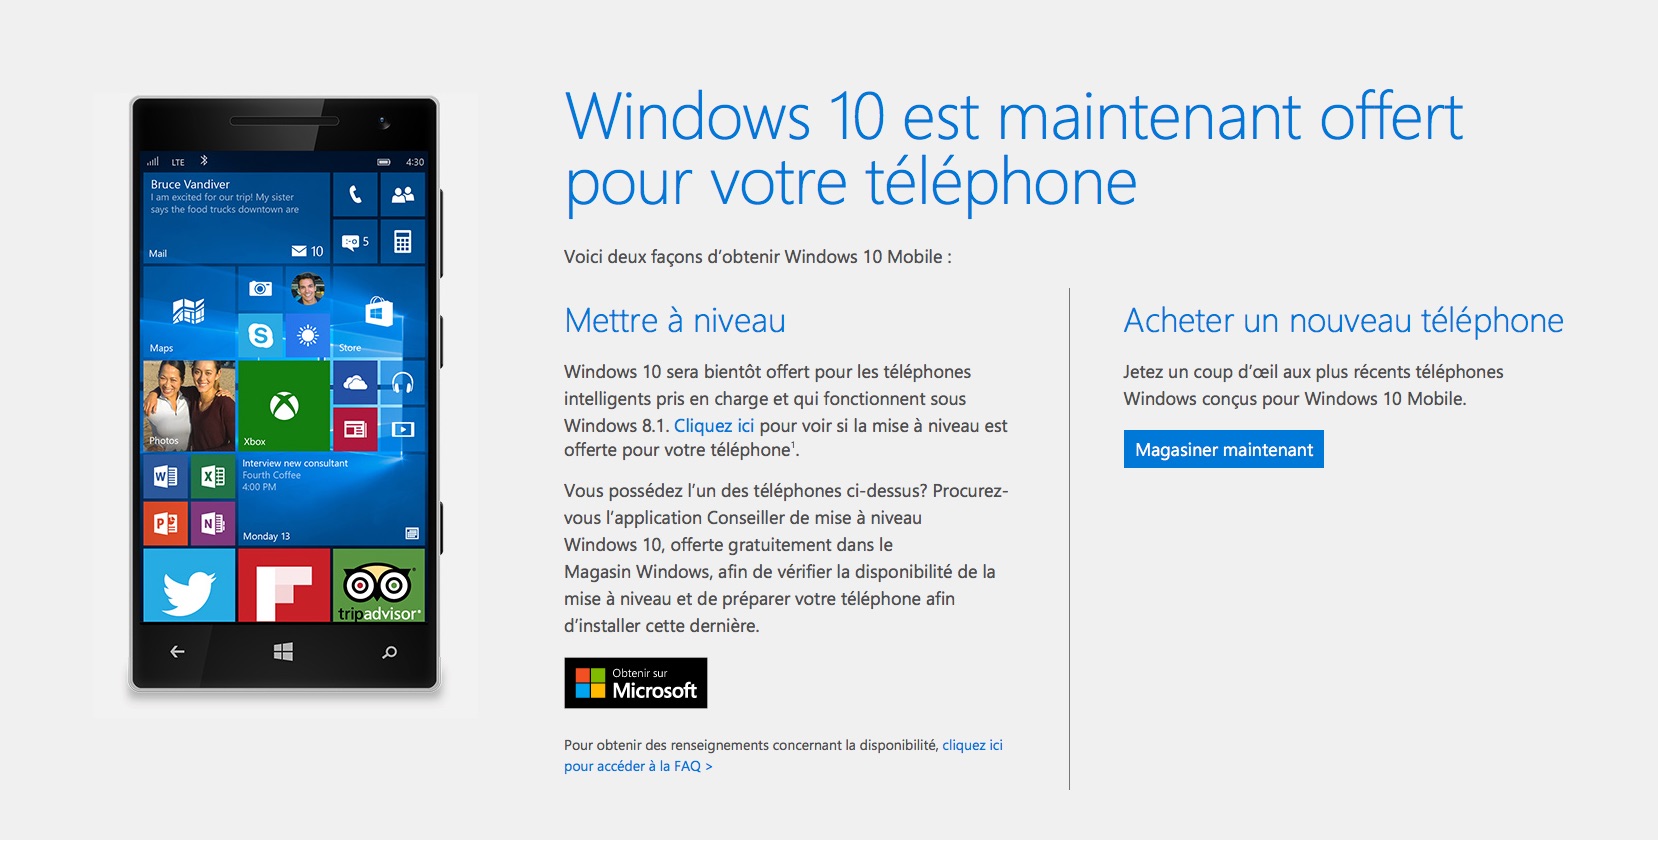 Mise a jour Windows 10 Mobile